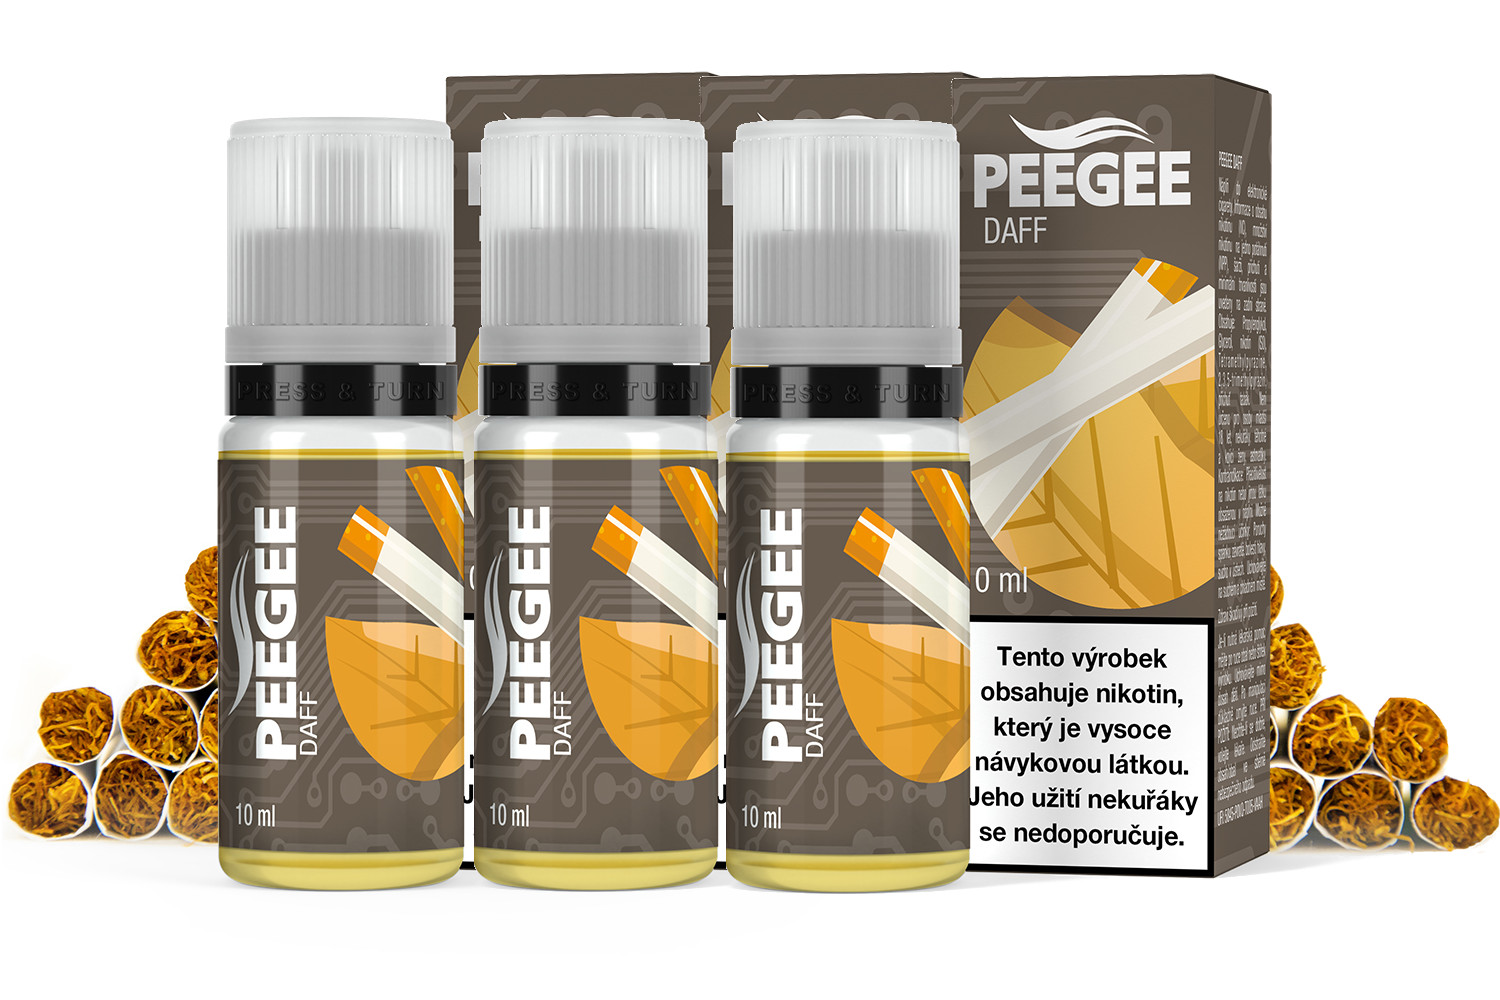 PEEGEE - DAFF 3x10ml Obsah nikotinu: 12mg